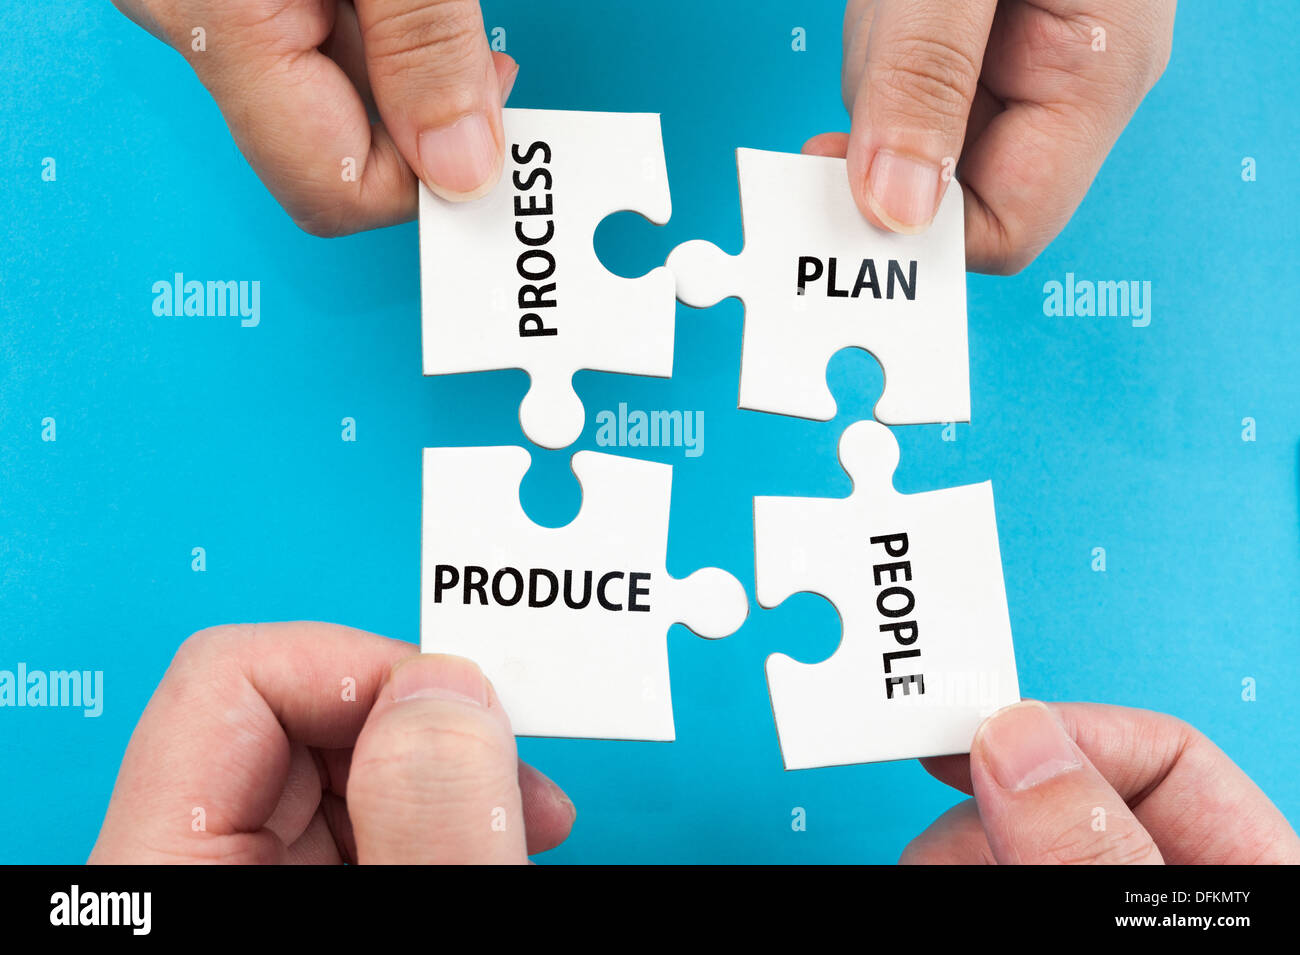 Prozess, Plan, Menschen, Produkte Wörter auf Gruppe von Jigsaw Puzzle-Teile Stockfoto